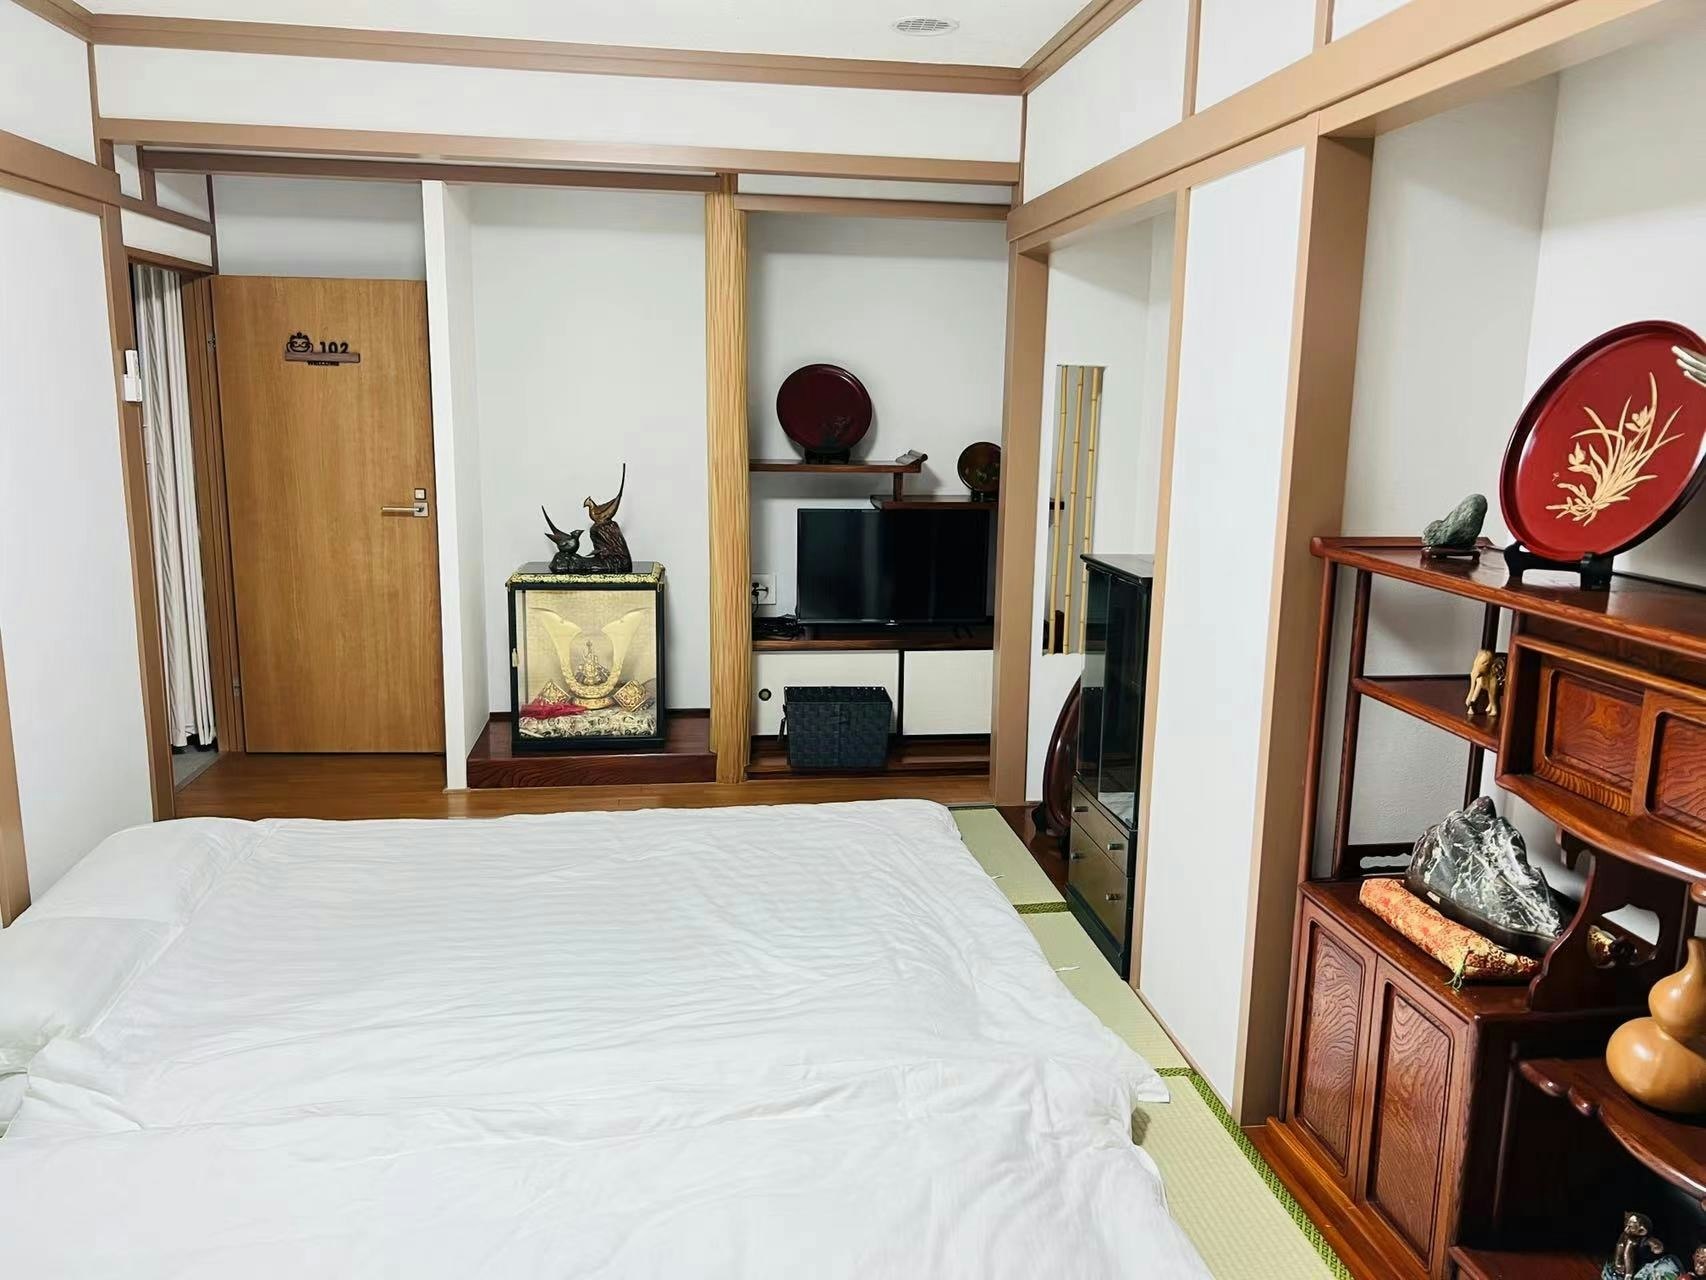 24時間出入り自由!高松の中心街の近くに位置し、観光や買い物も楽しめます!和室のお部屋になります!